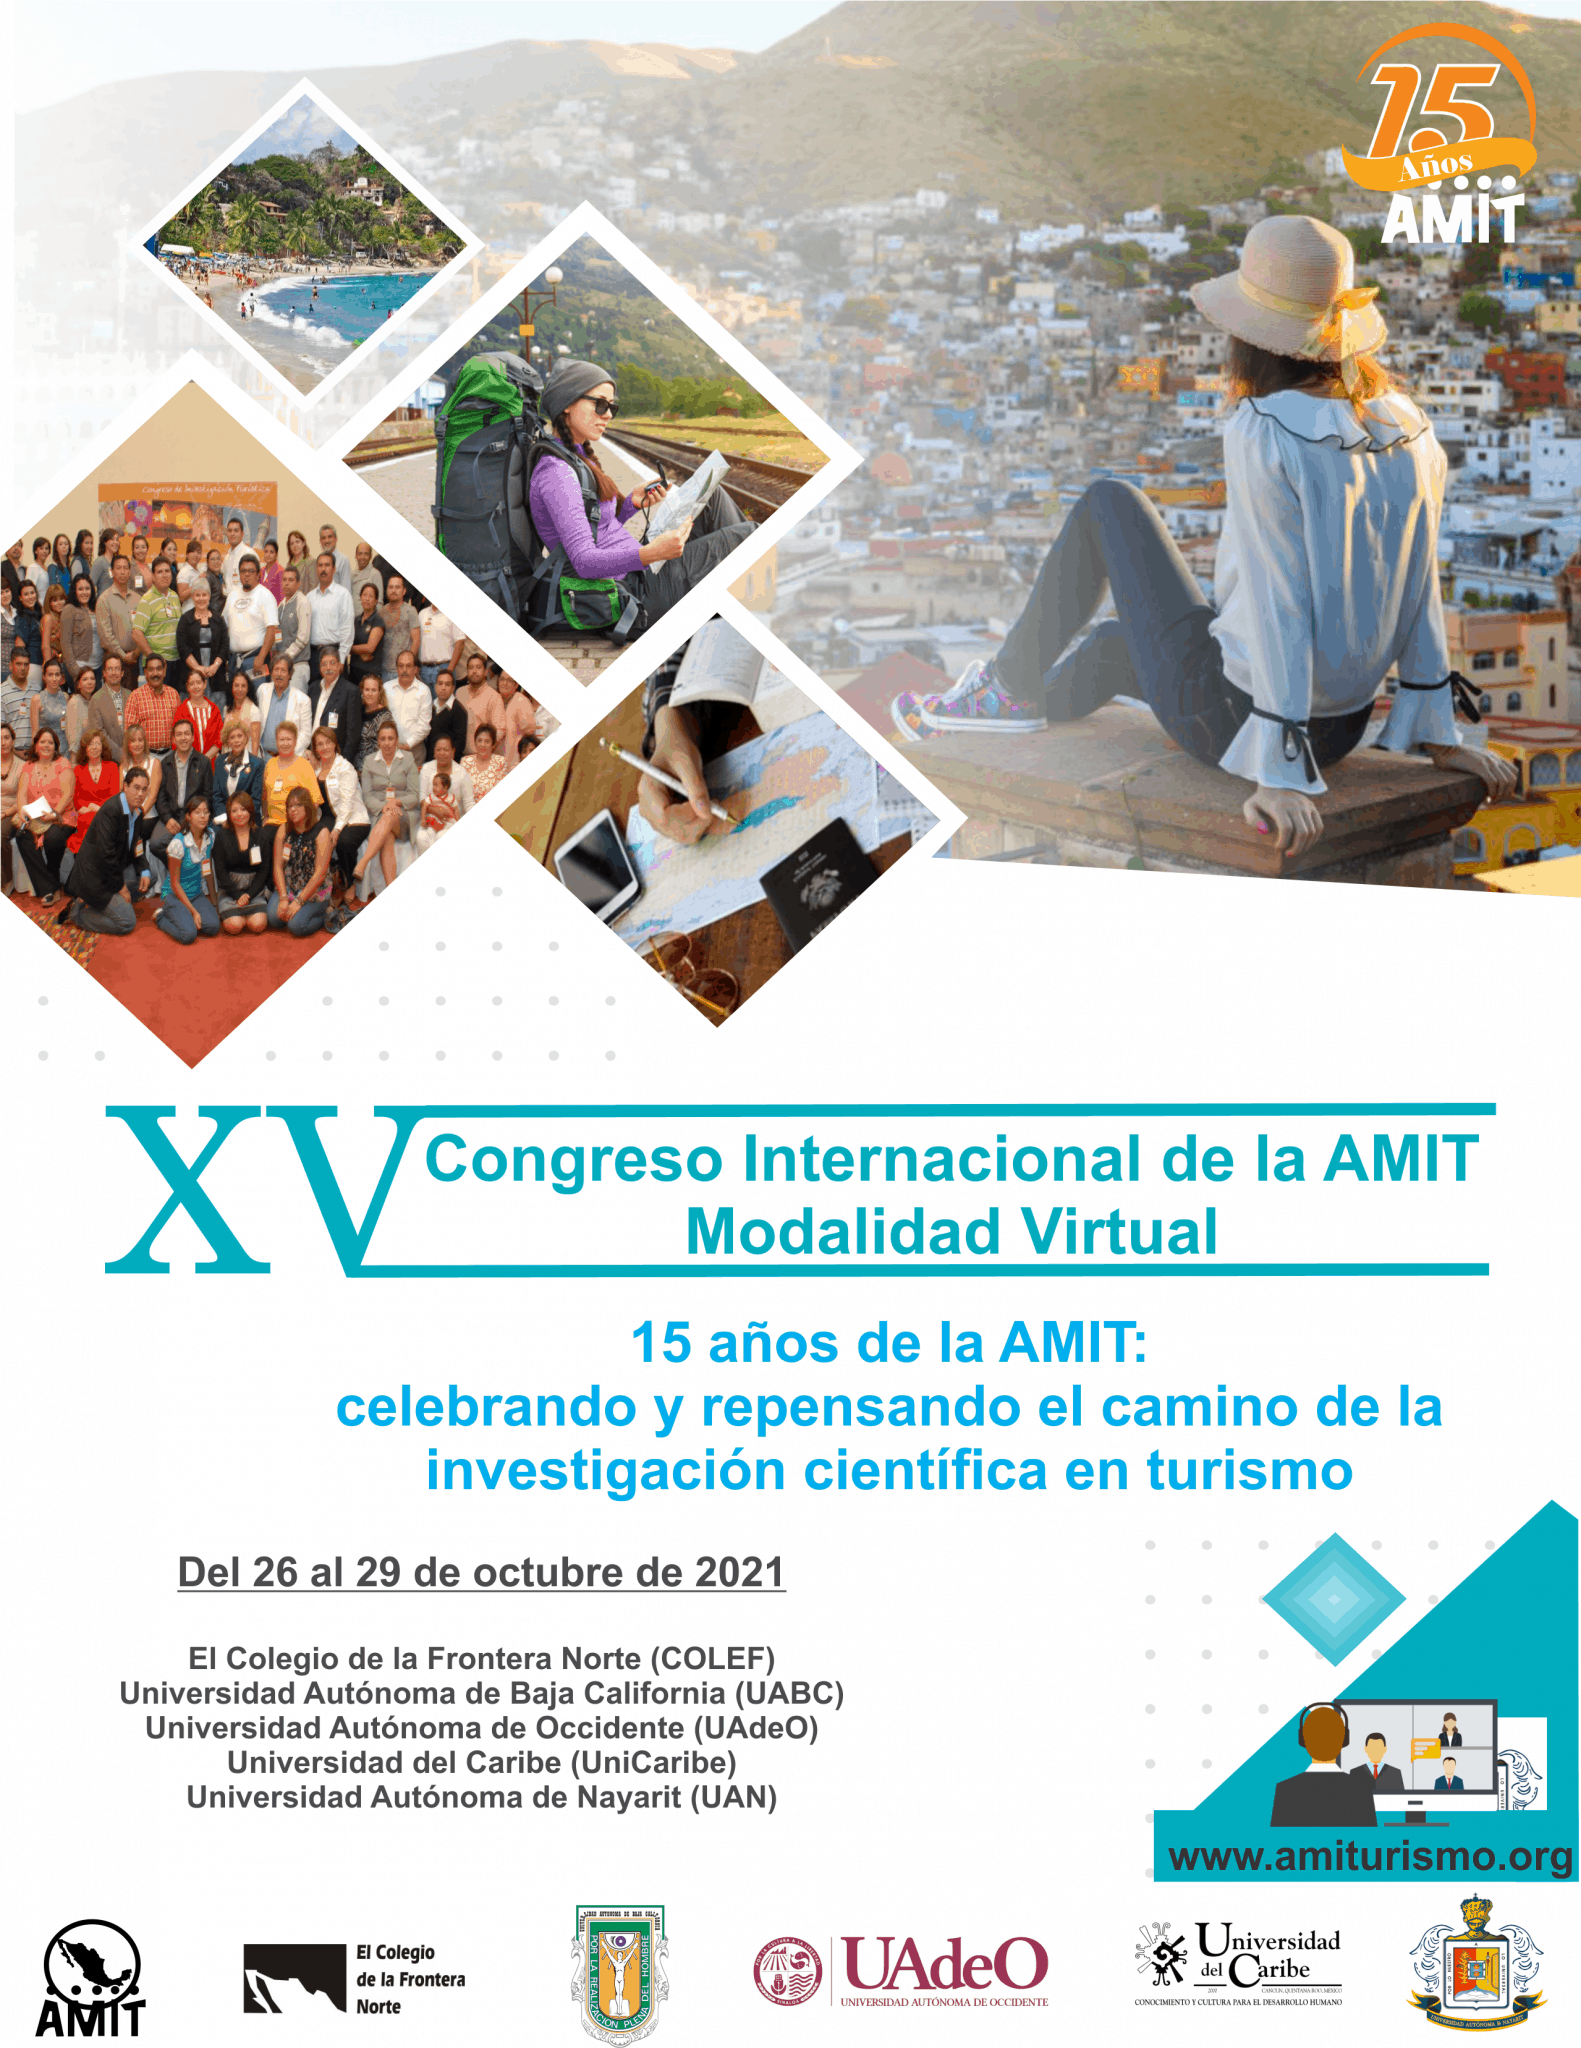 XV Congreso Internacional de la AMIT. Modalidad Virtual. 26-29 octubre de 2021 - 2